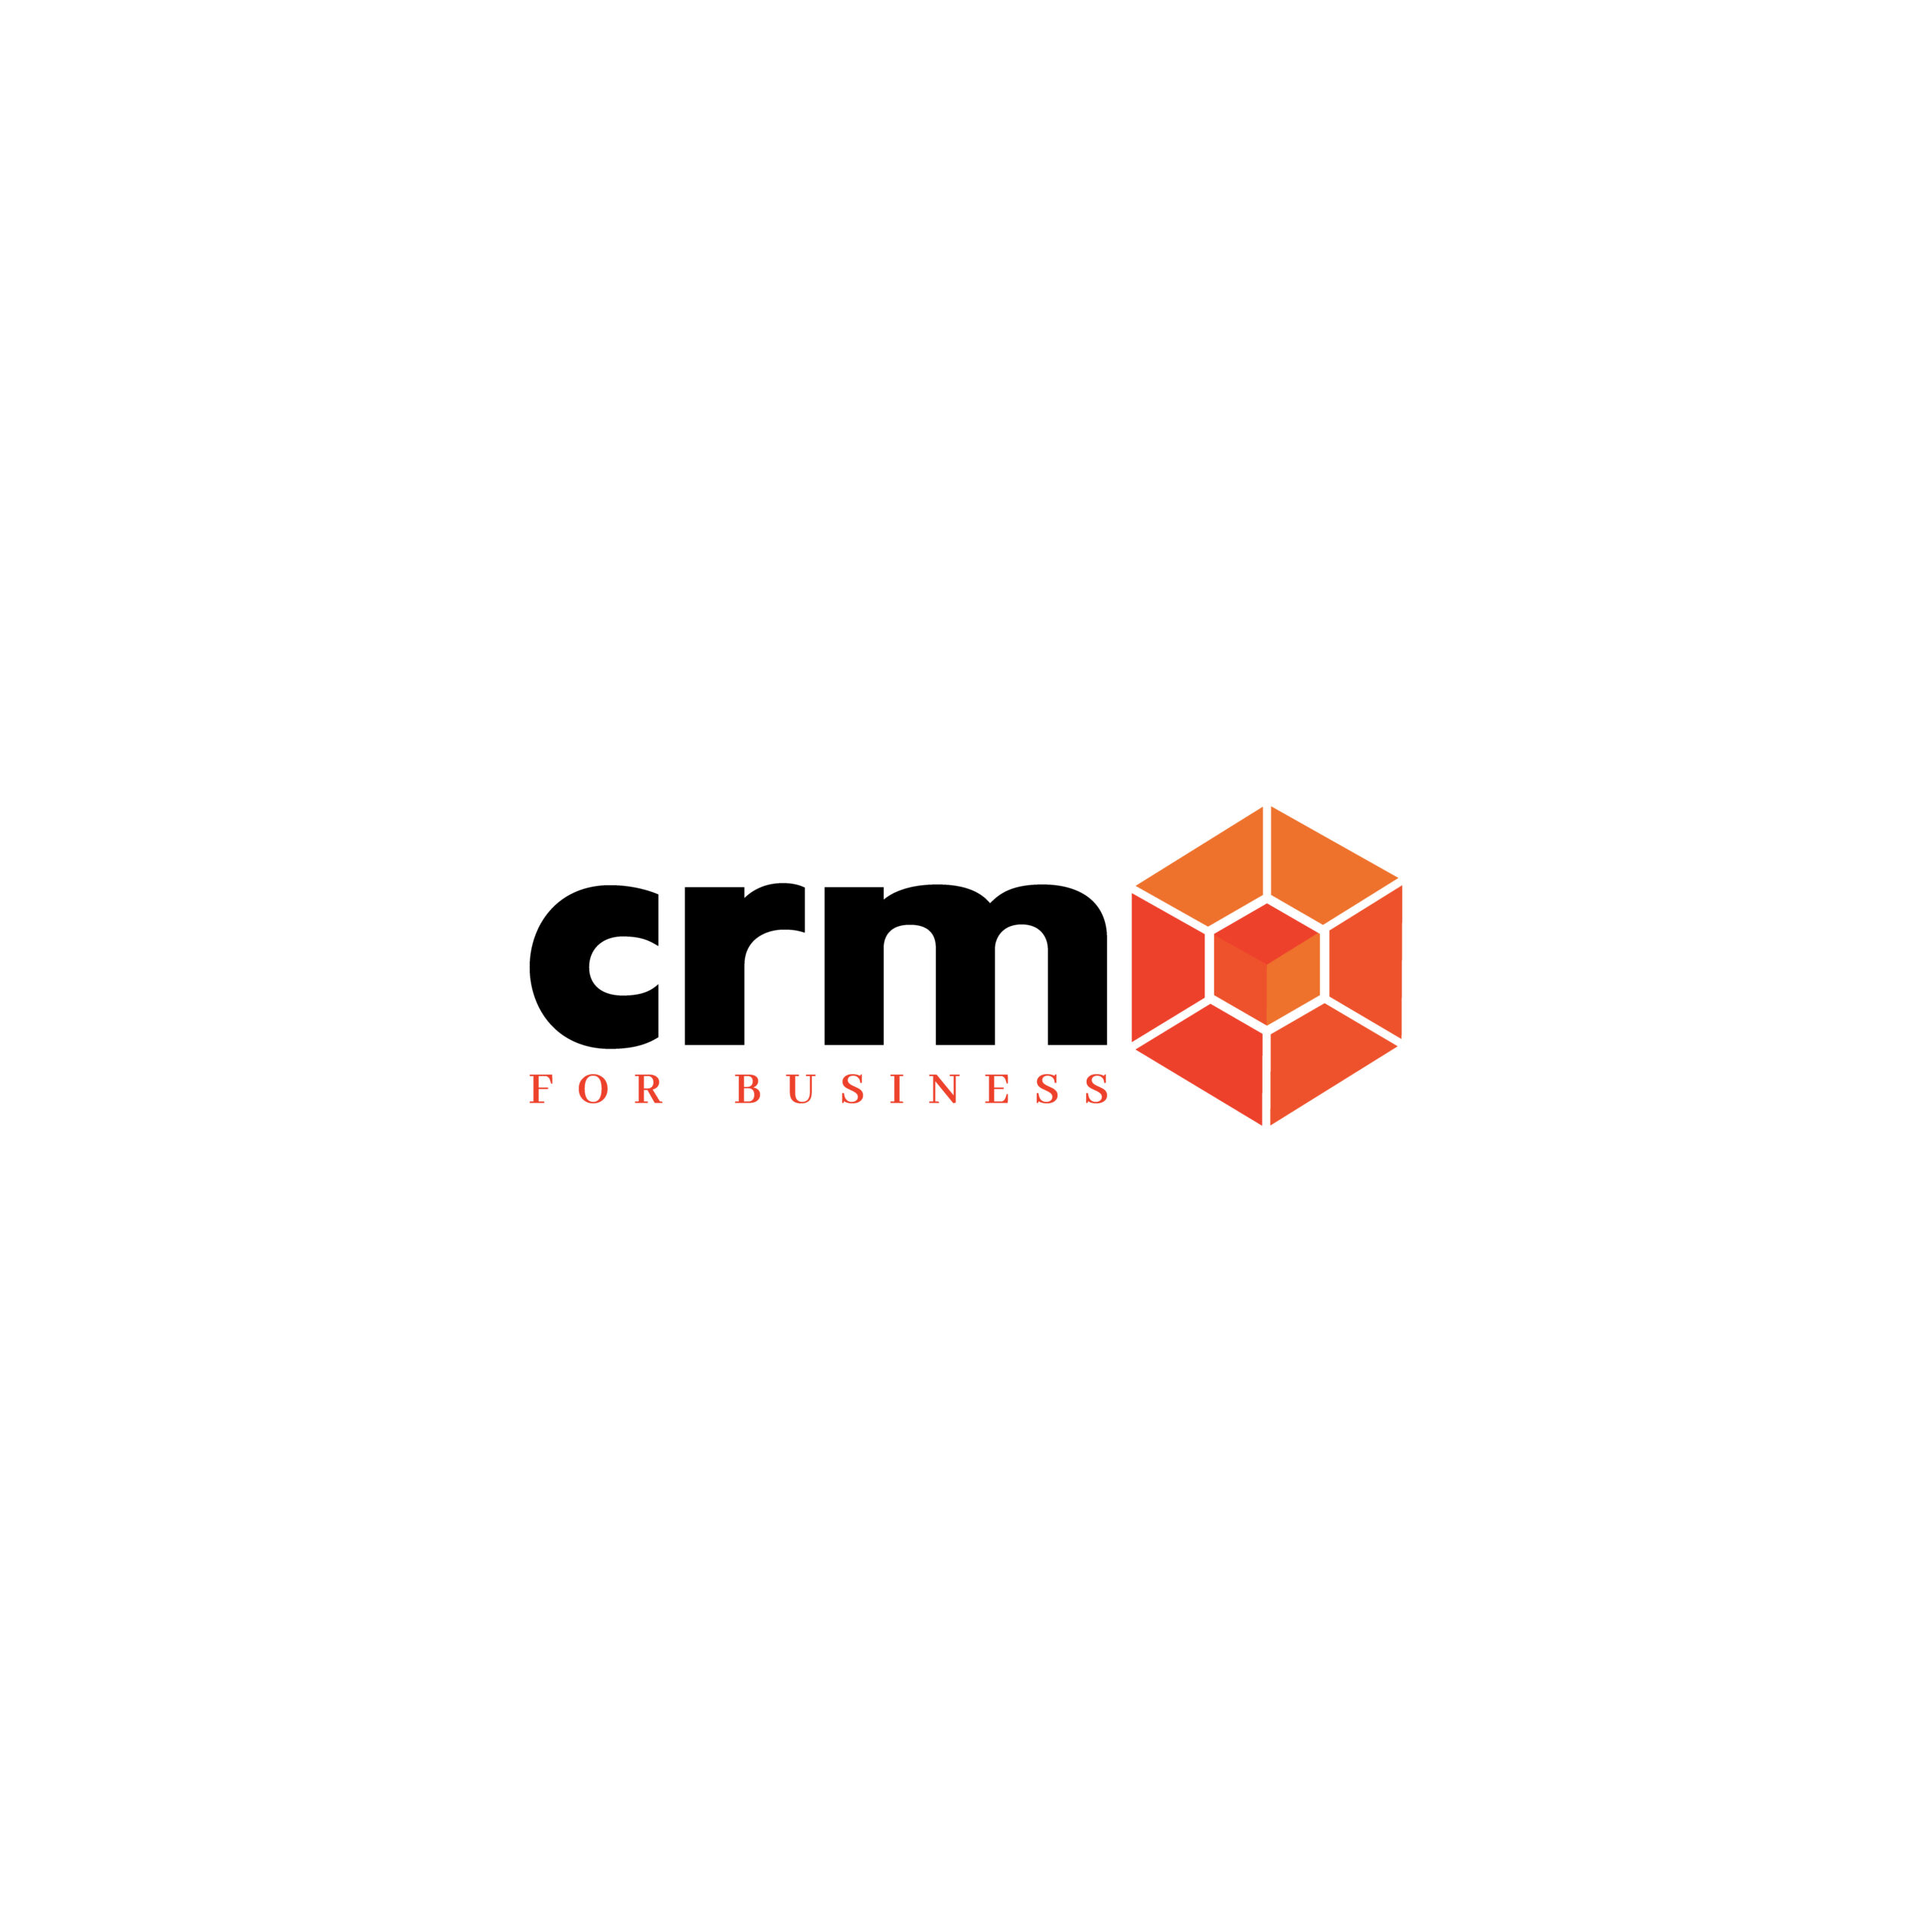 crm_logo_v21